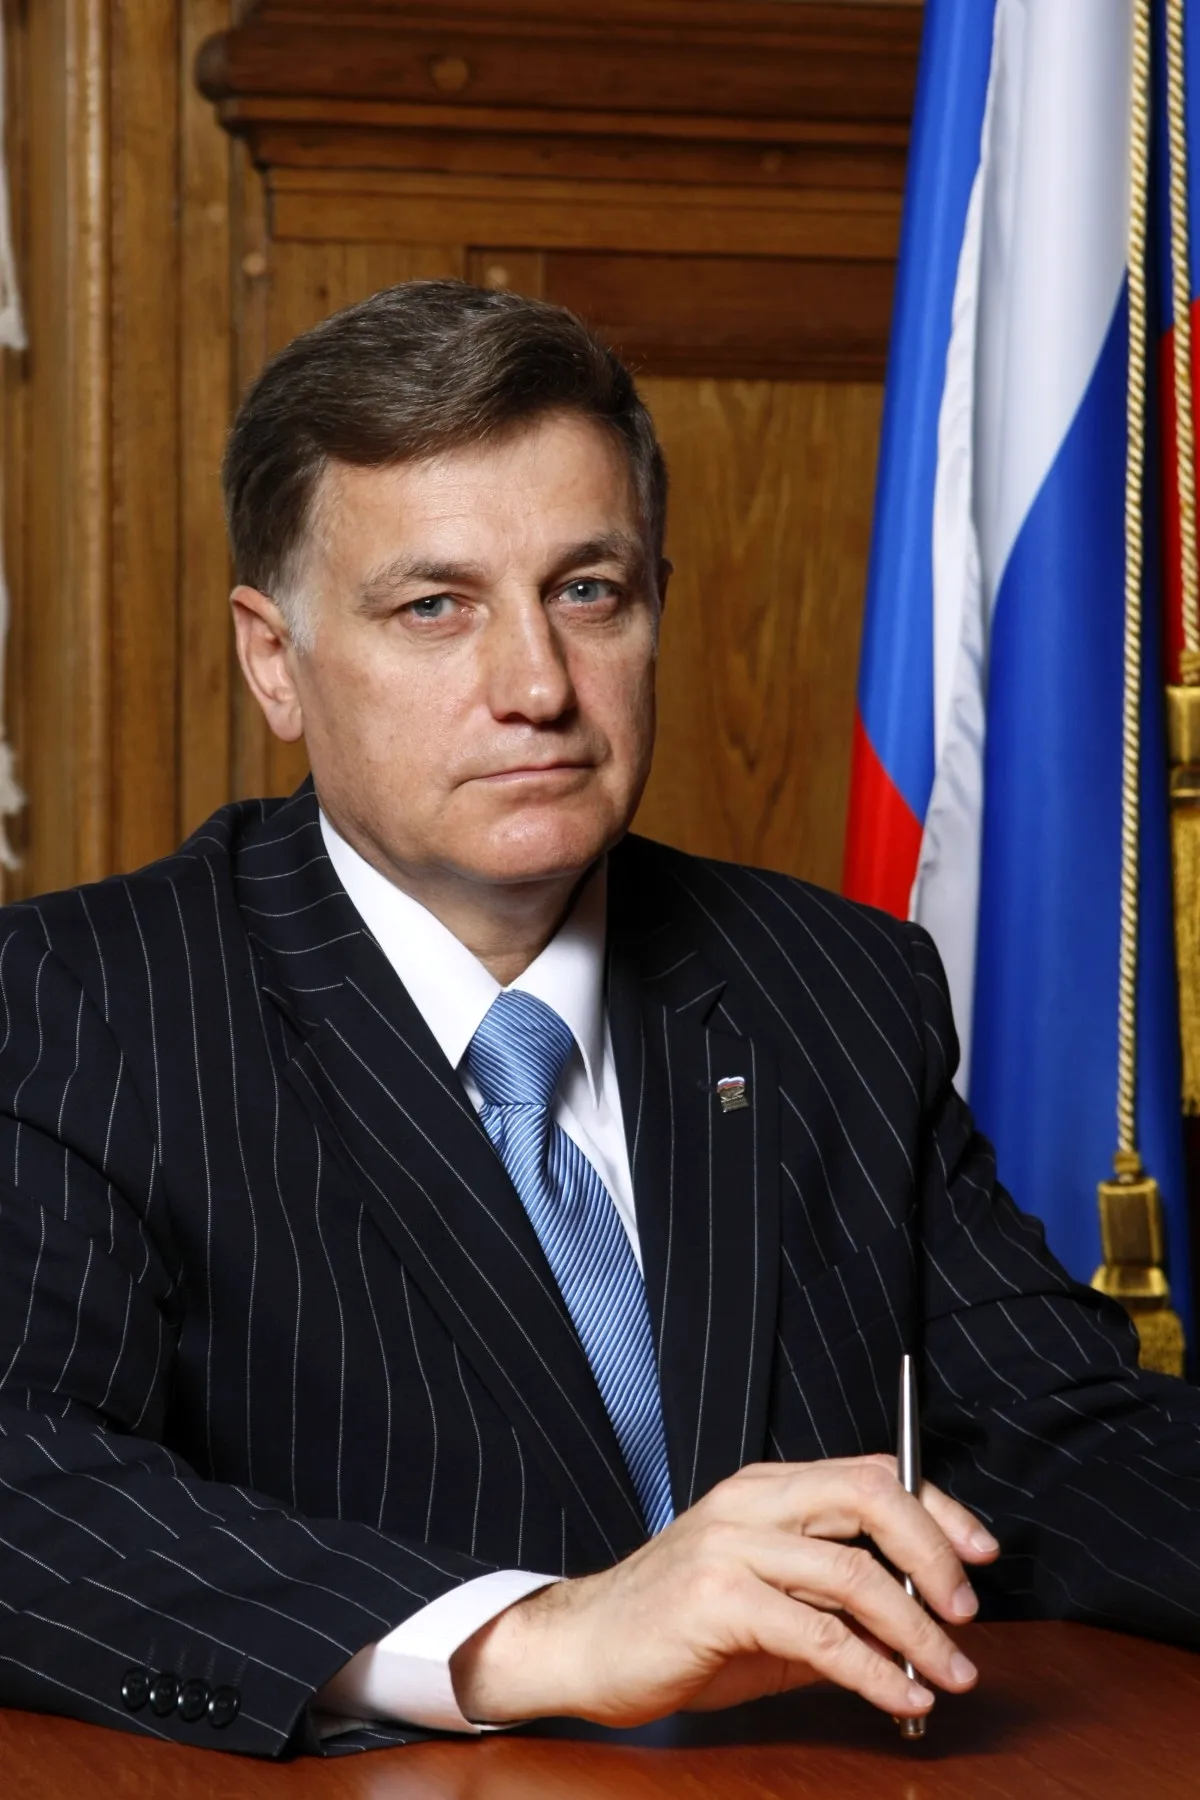 Макаров председатель Законодательного собрания Санкт-Петербурга